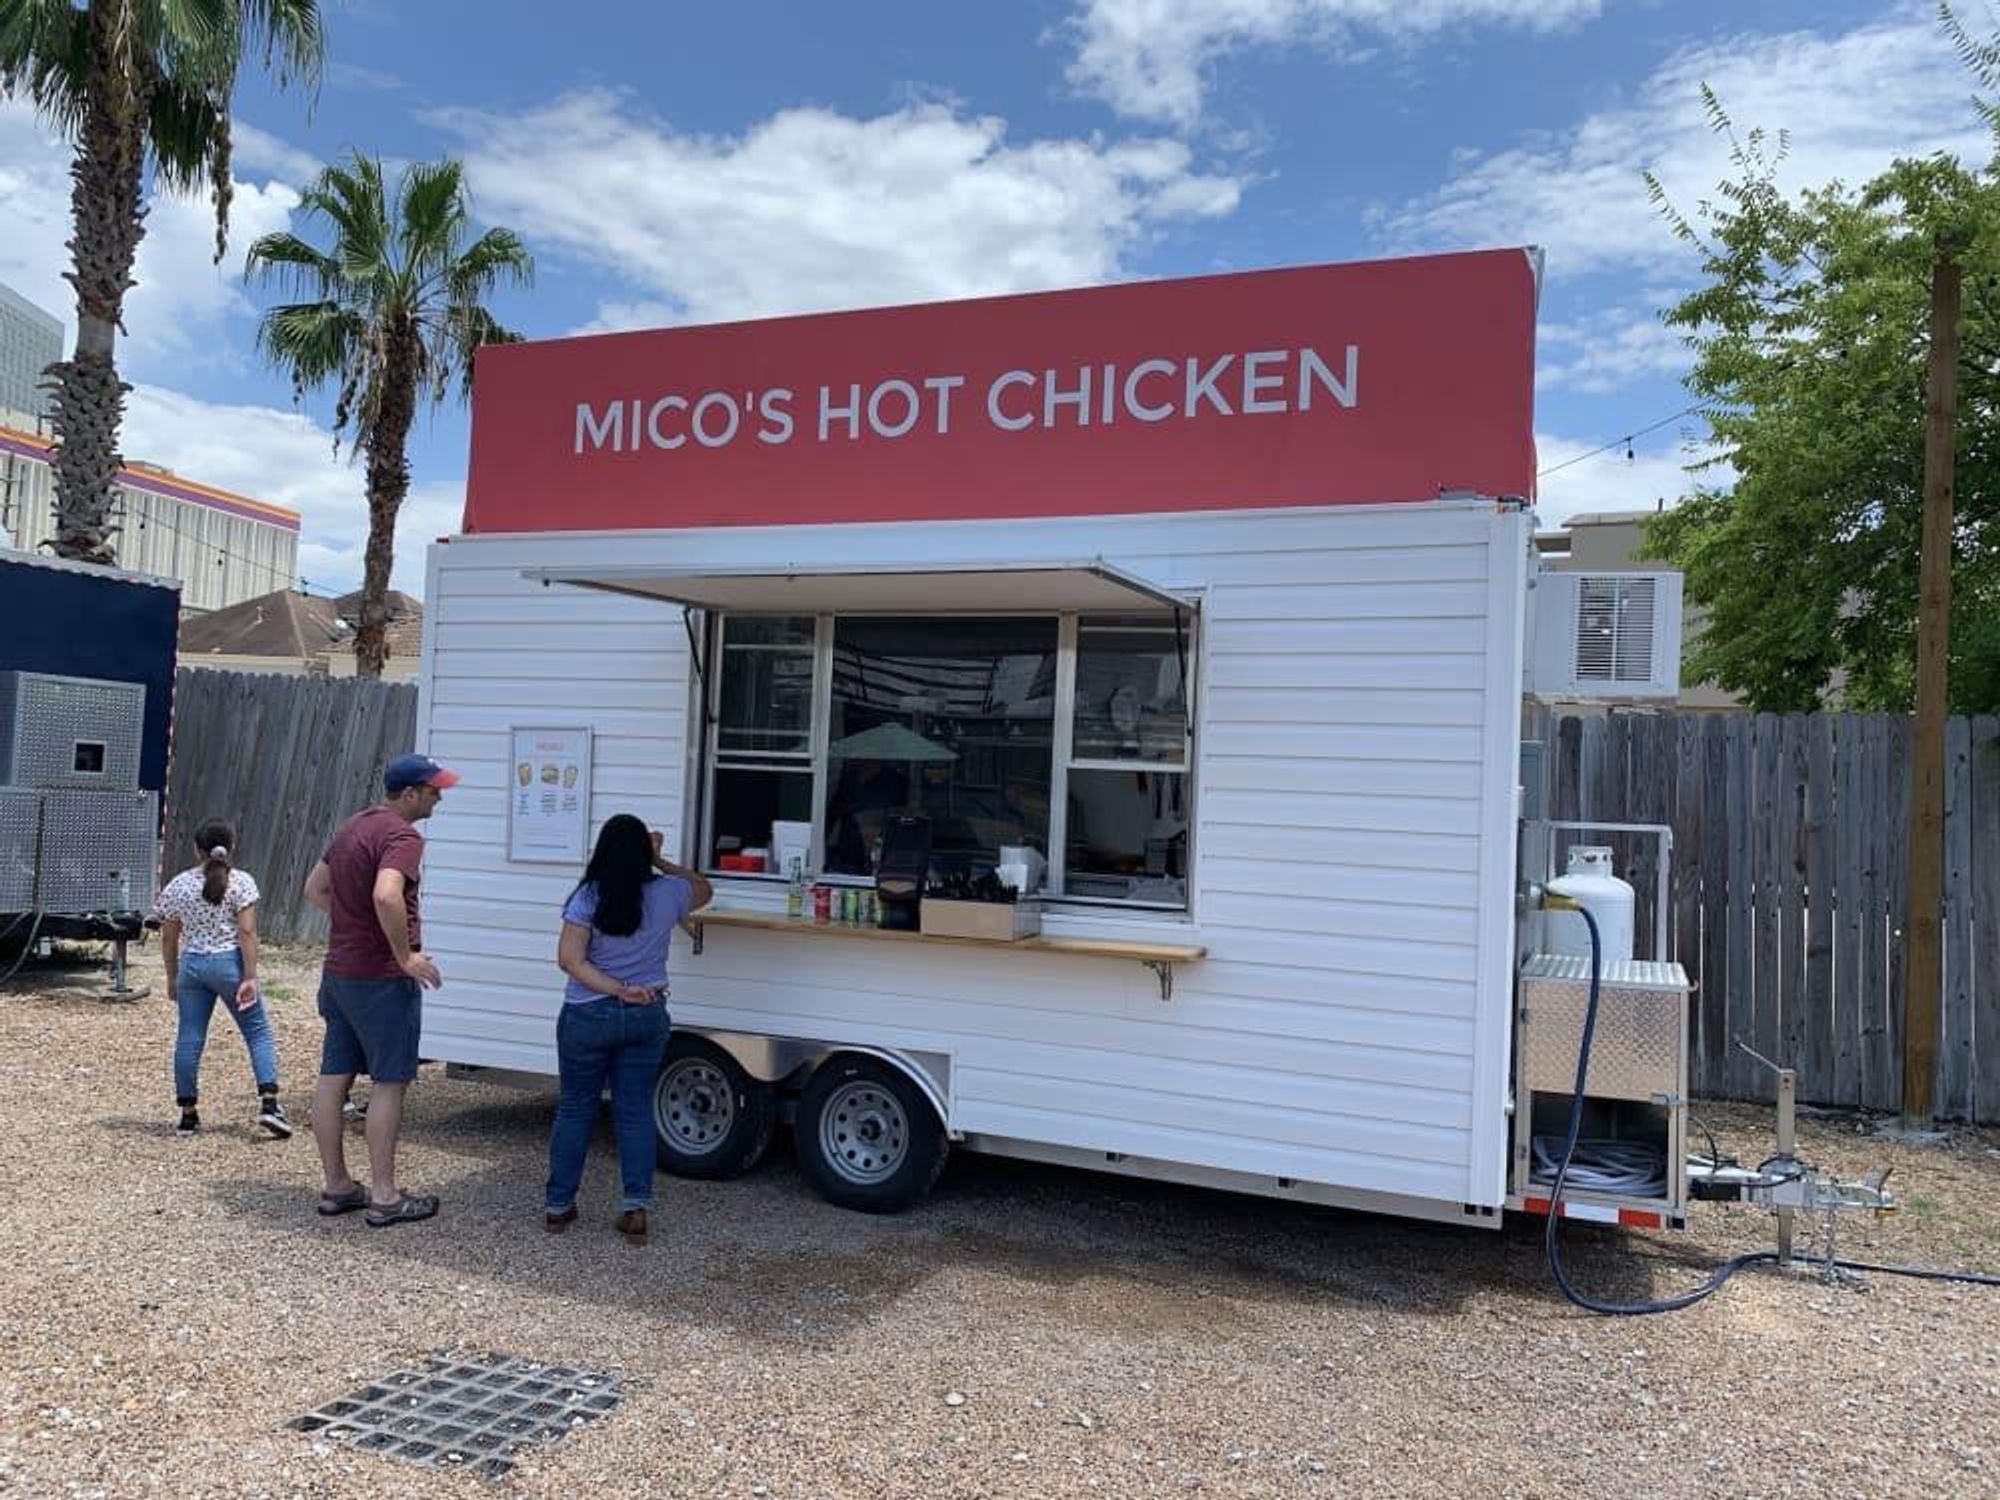 Mico's Hot Chicken trailer